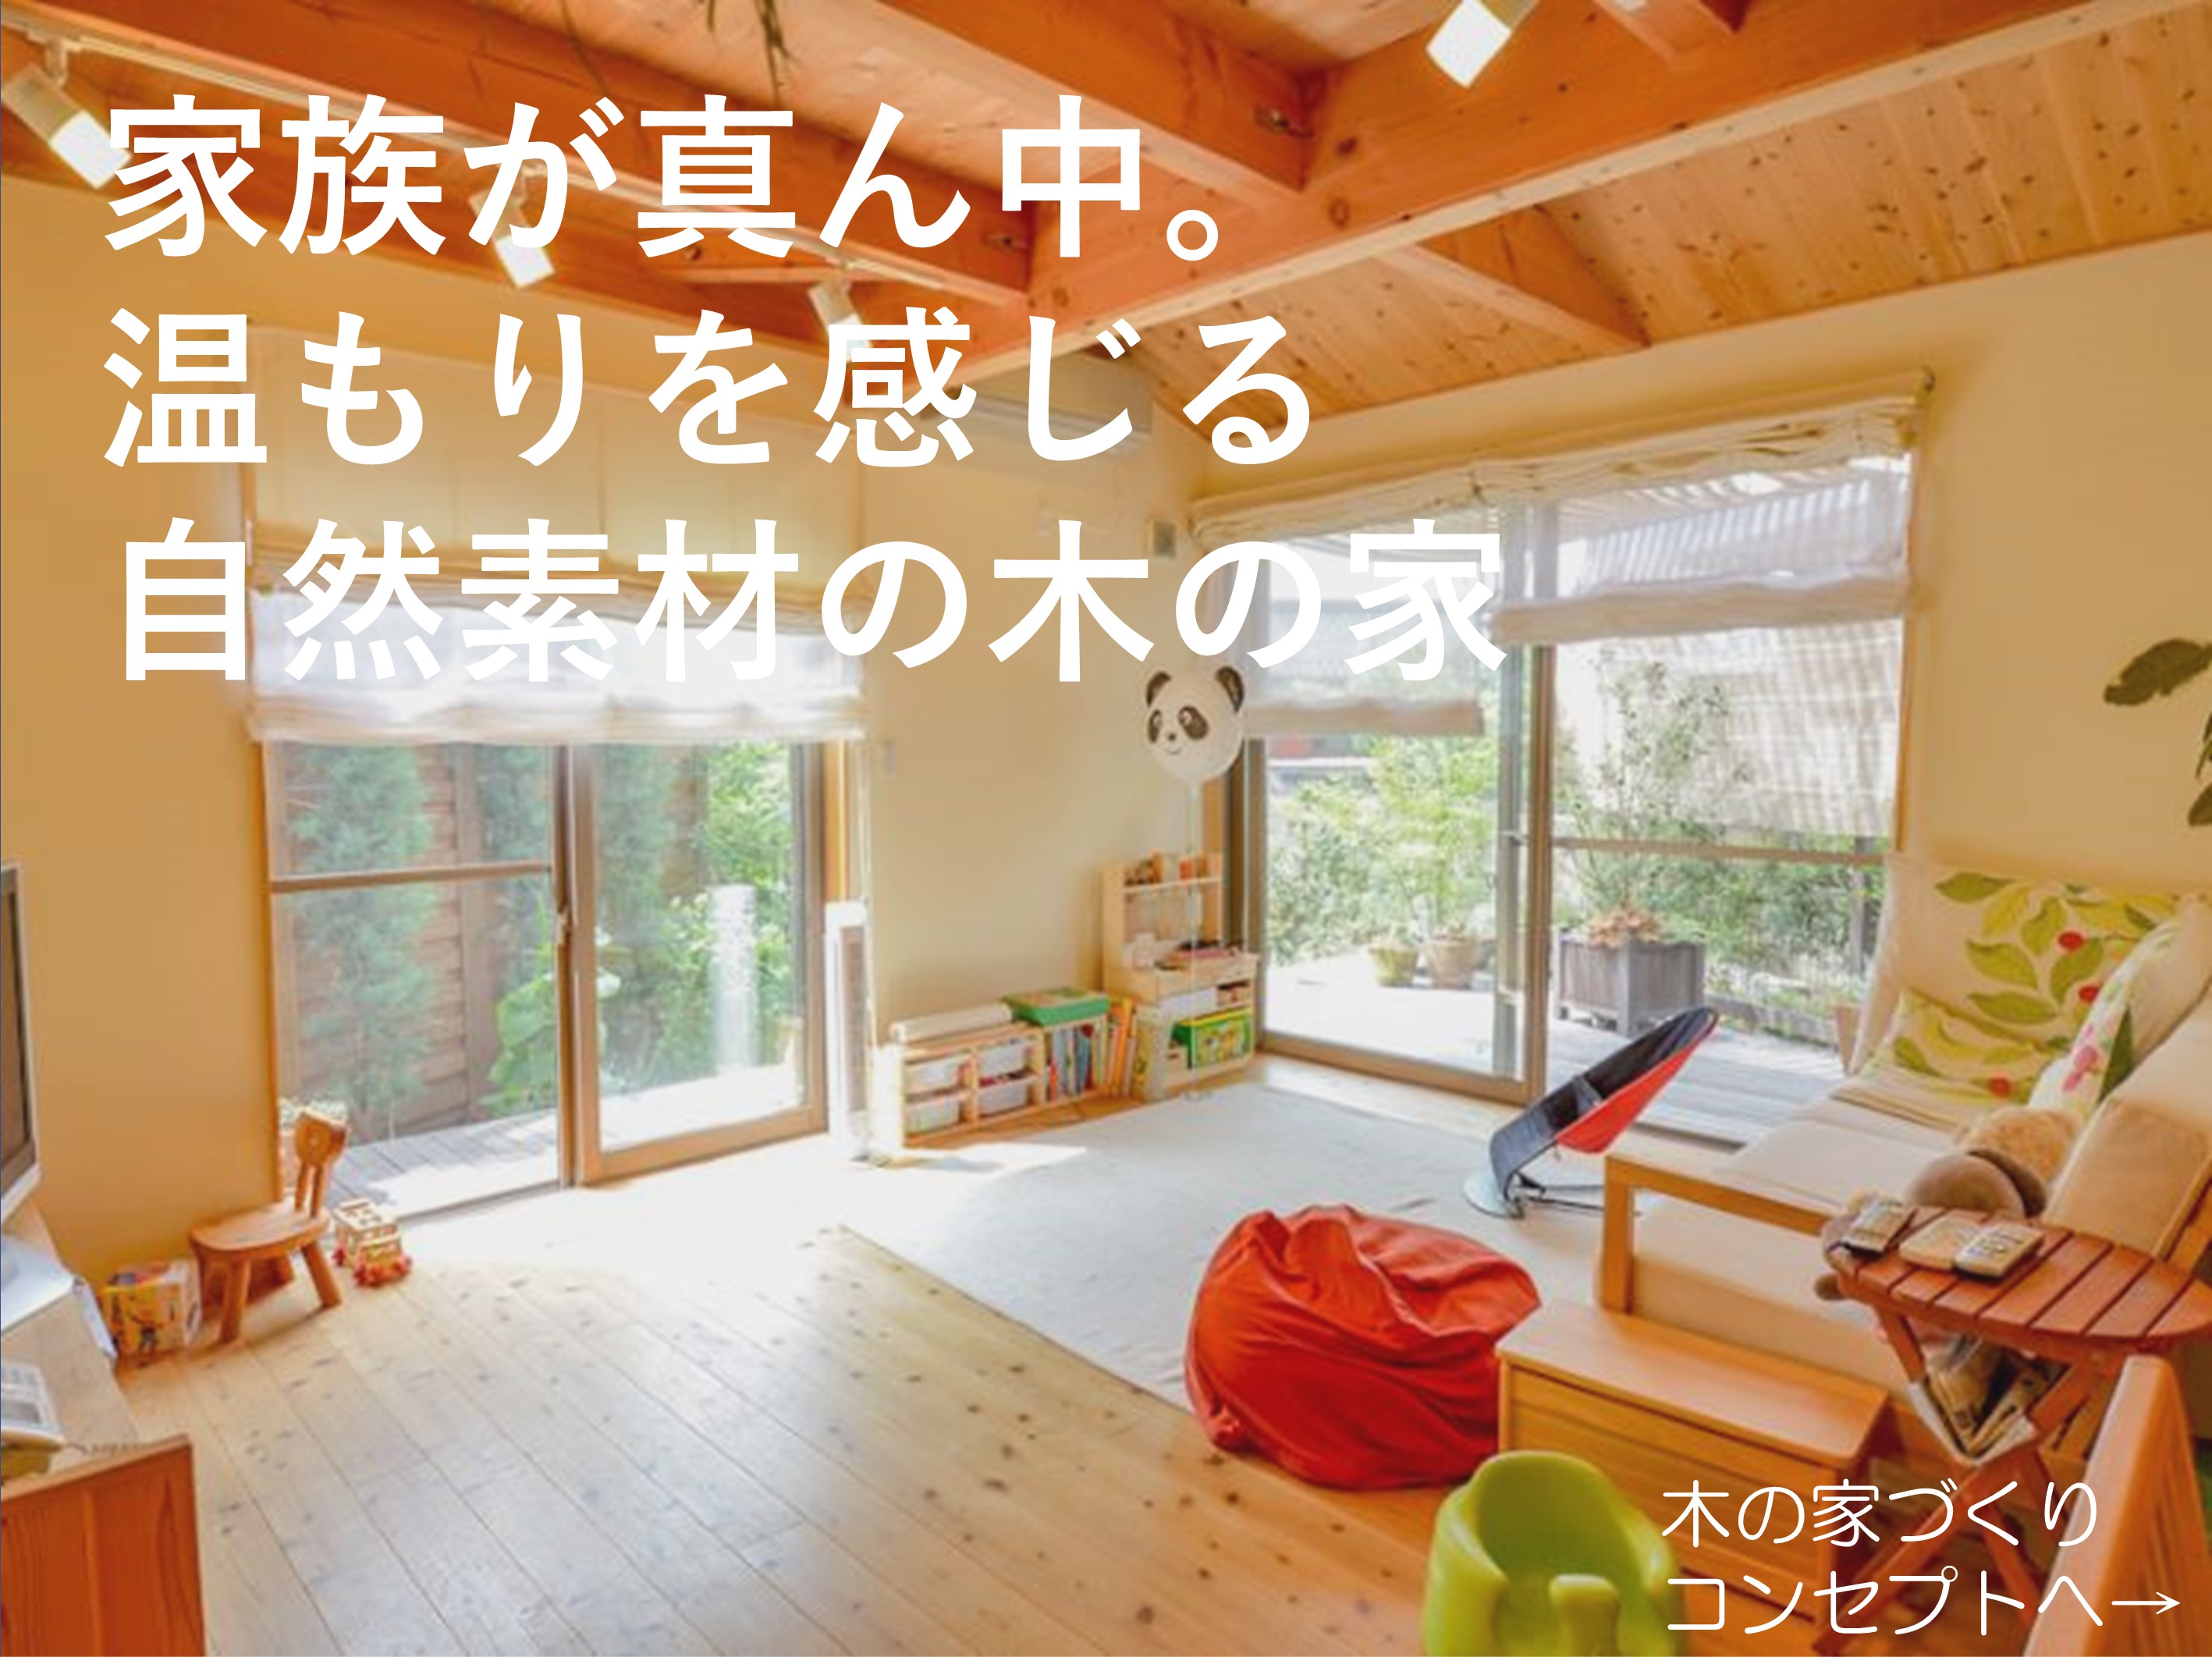 滋賀 京都で家を建てる 自然素材の木の家注文住宅 滋賀県はんべ工務店